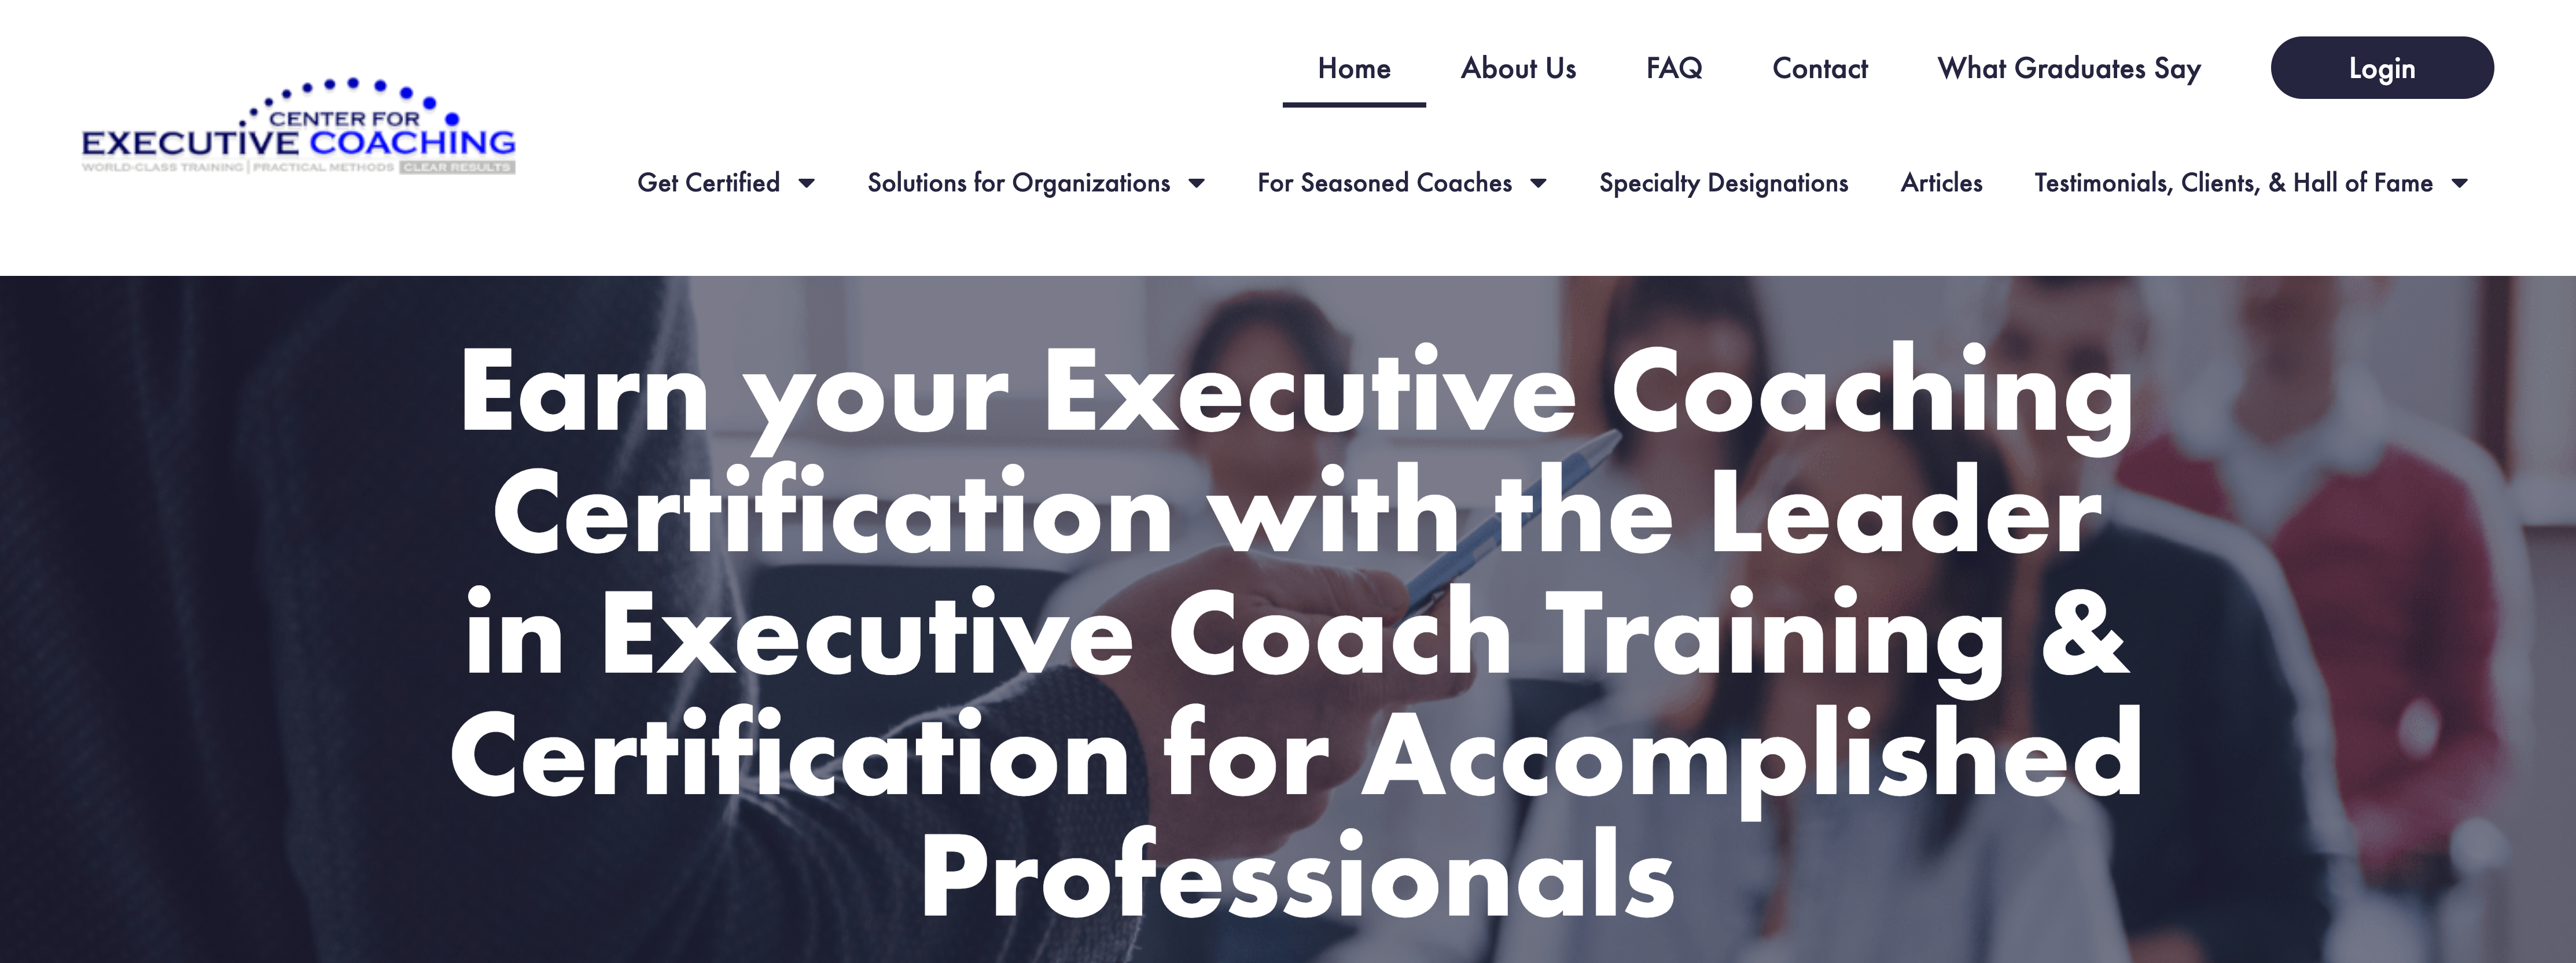 Center for Executive Coaching